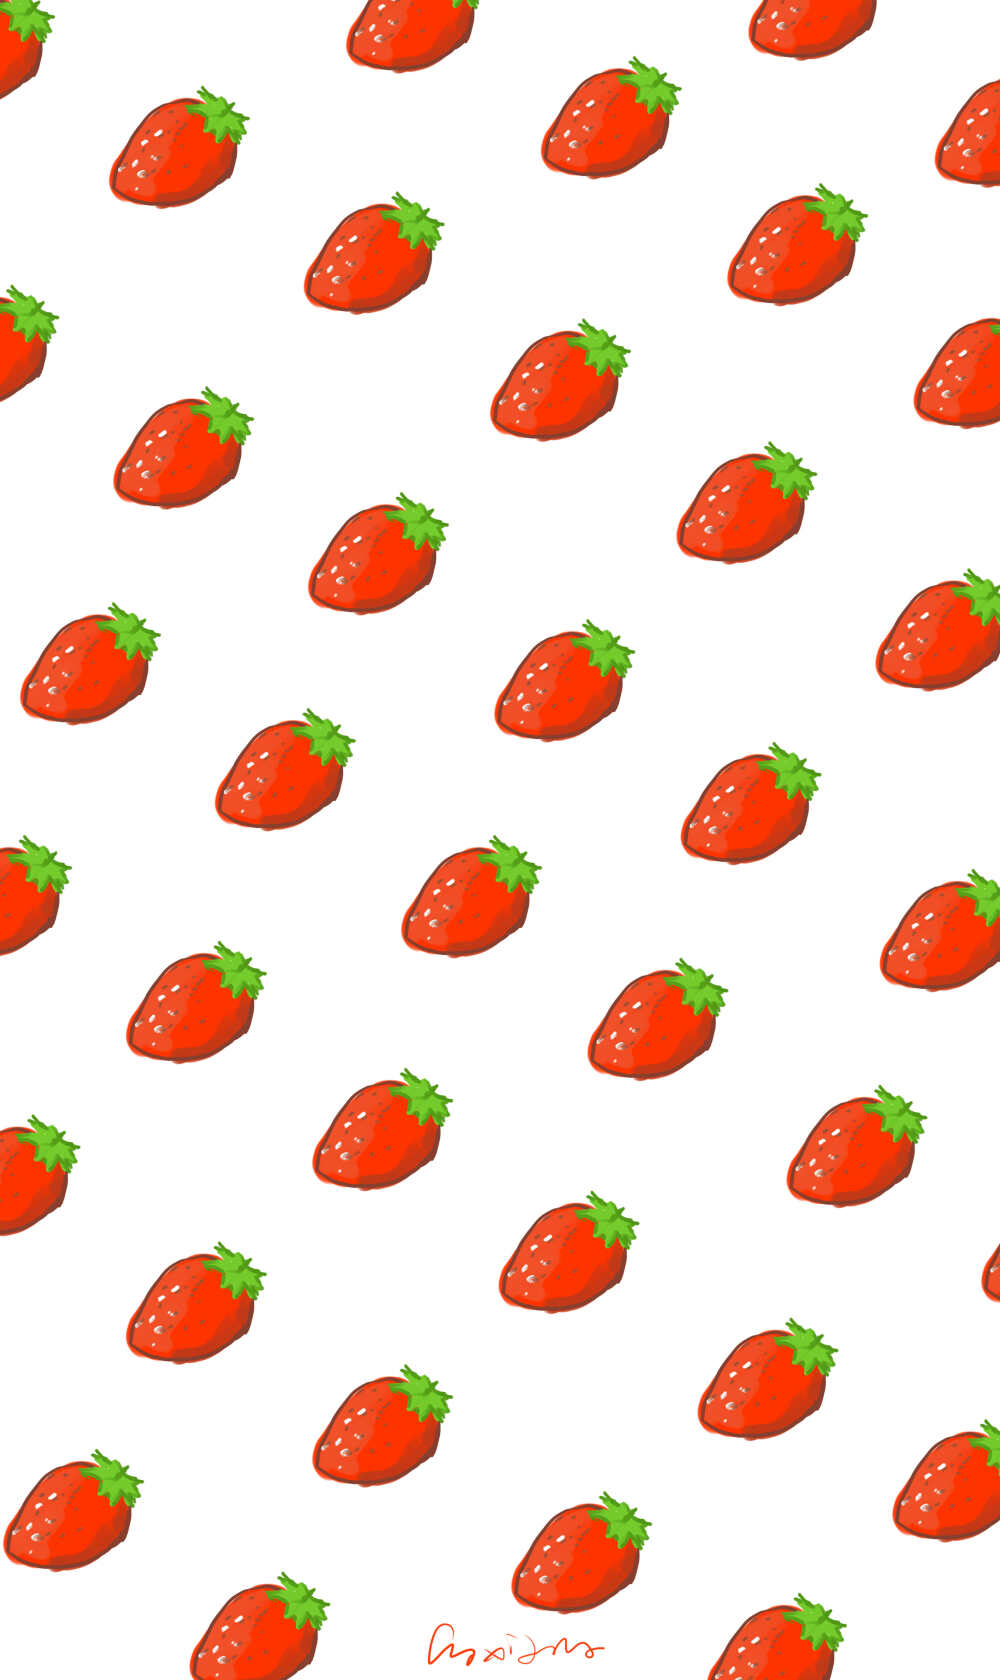 原创壁纸 平铺手绘 草莓 ##喜欢我的图吗！ 快来收集 收集O(∩_∩)O 请勿盗图 转发请注明出处 蟹蟹~